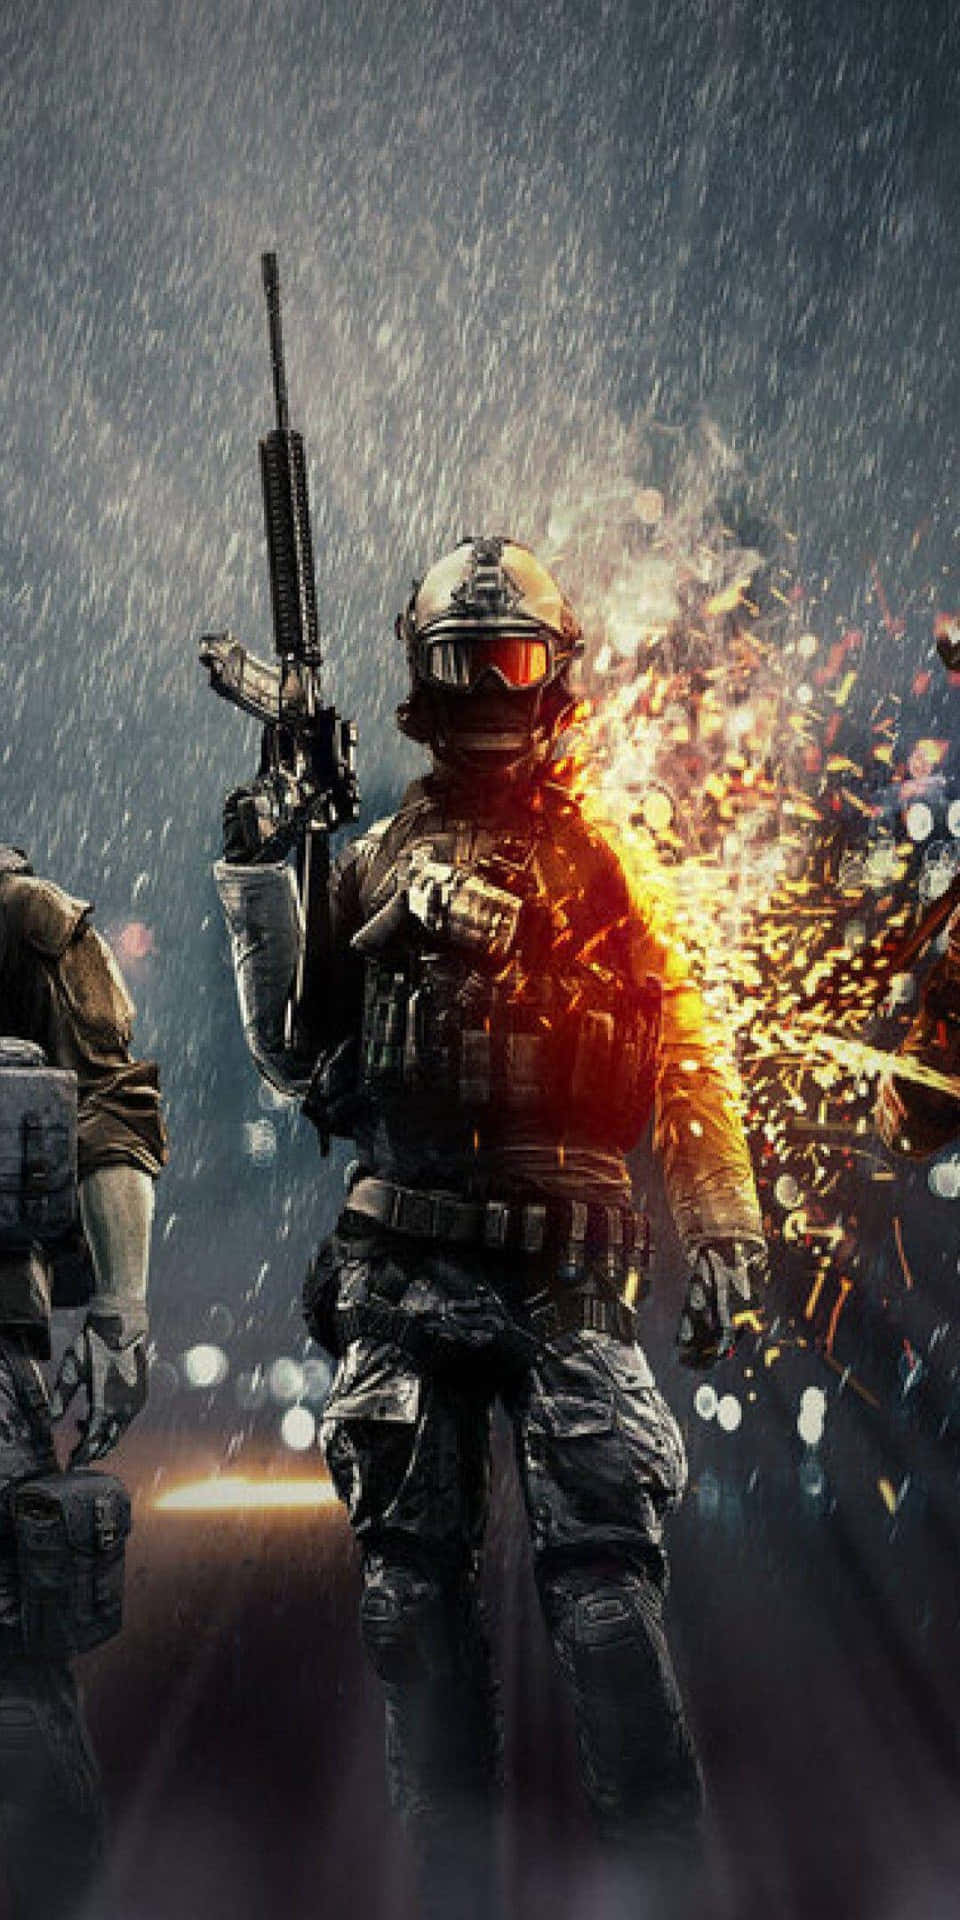 Pixel3 Battlefield 4 Bakgrundssoldat På Datorskärmen.